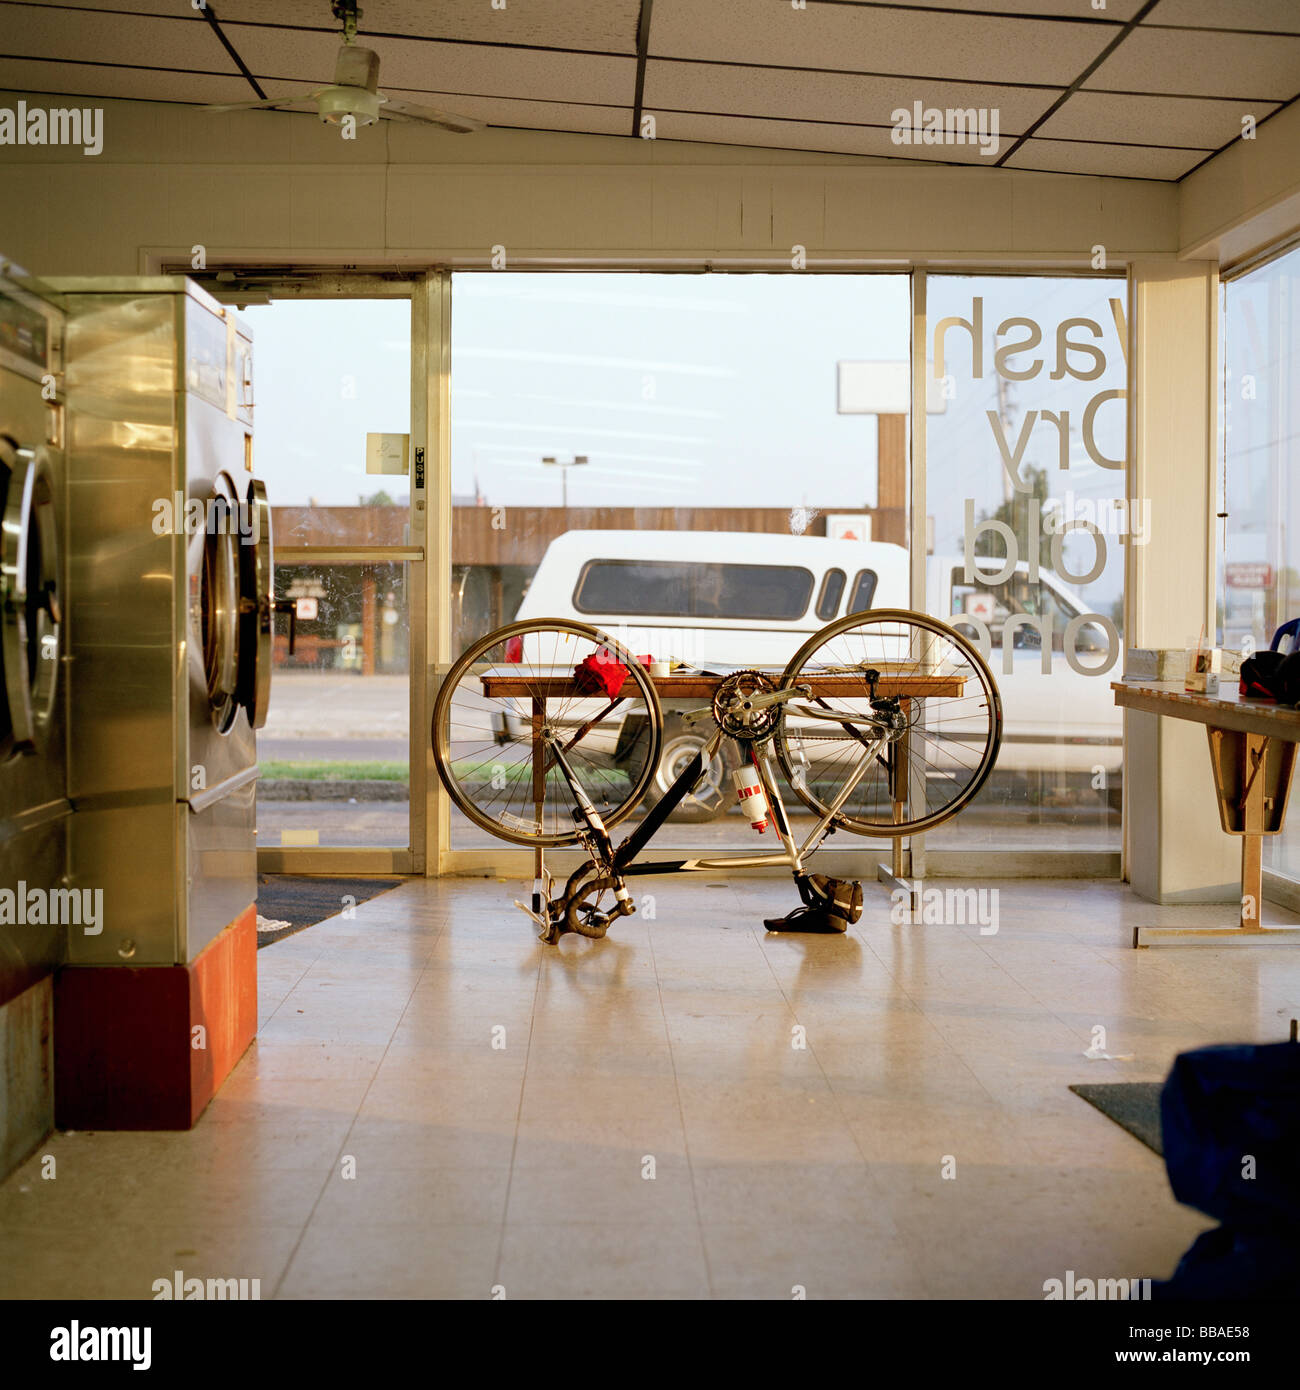 Un vélo à l'envers dans une laverie automatique Banque D'Images